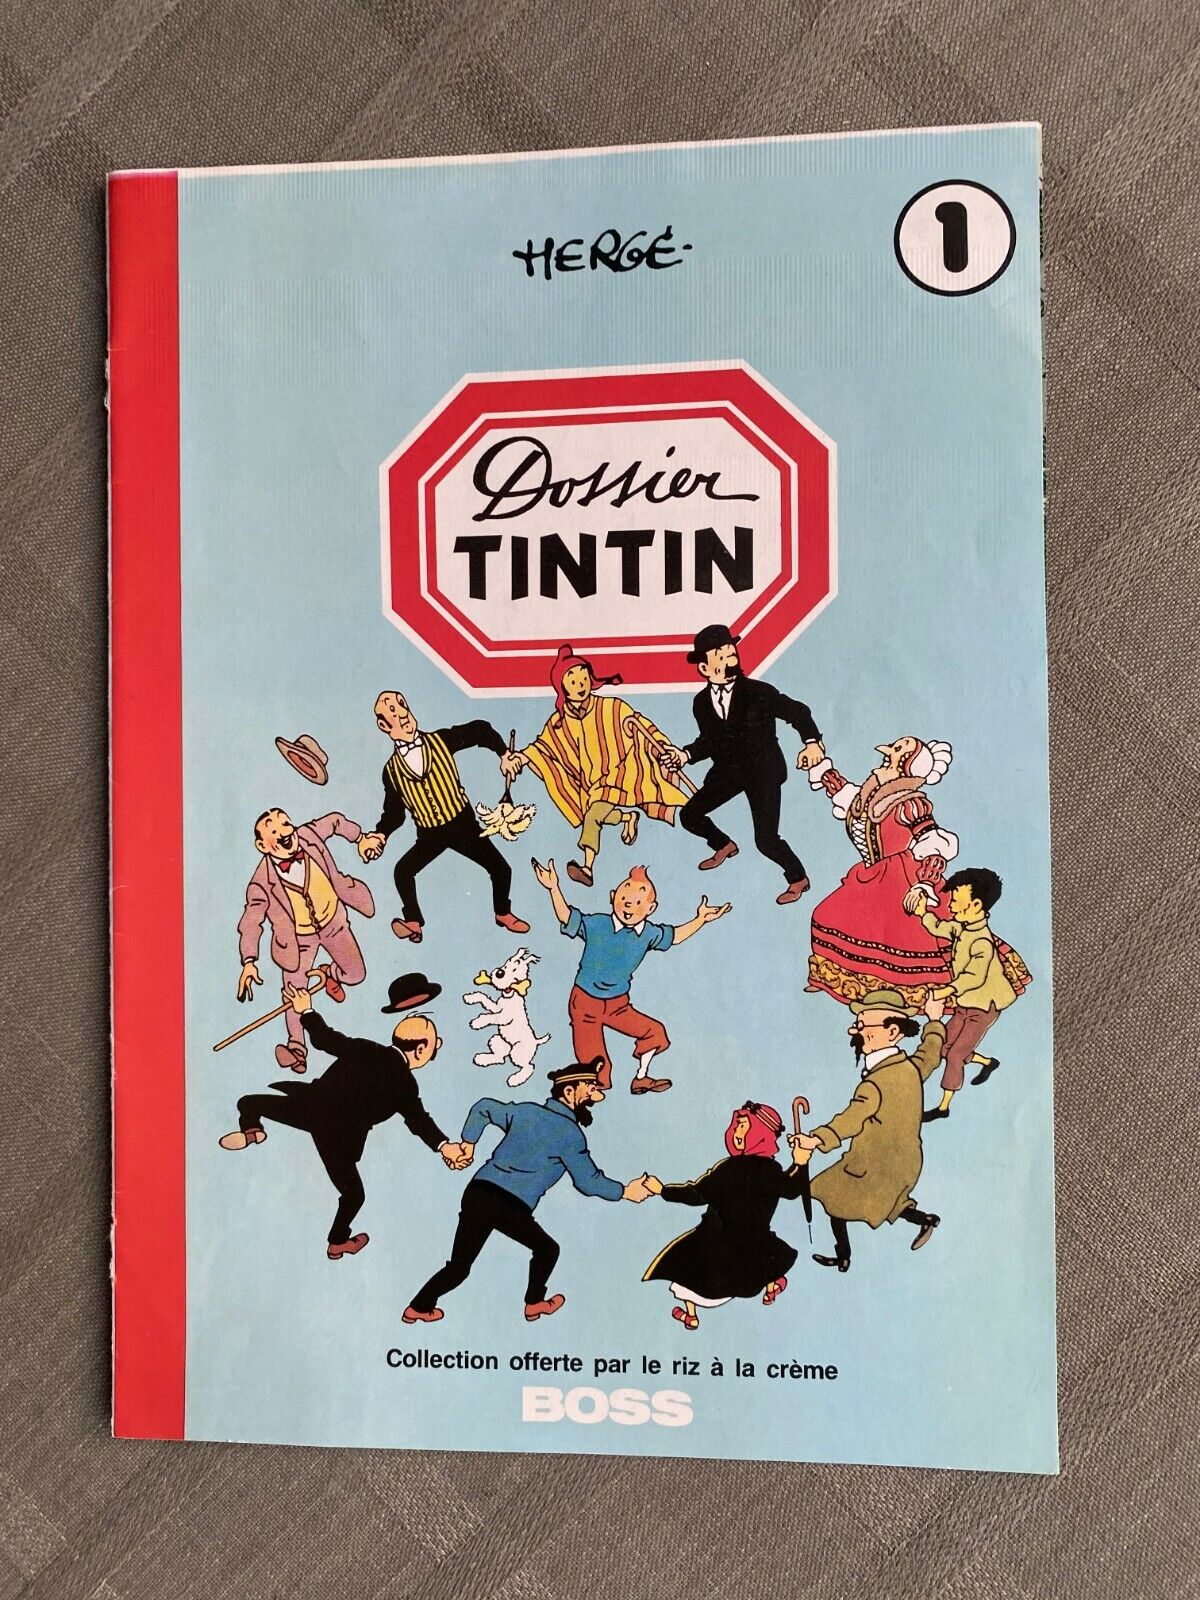 Hergé Folder Tintin to Be Sent Image To Stick Pub Rice À La Cream Boss 1979 Tbe